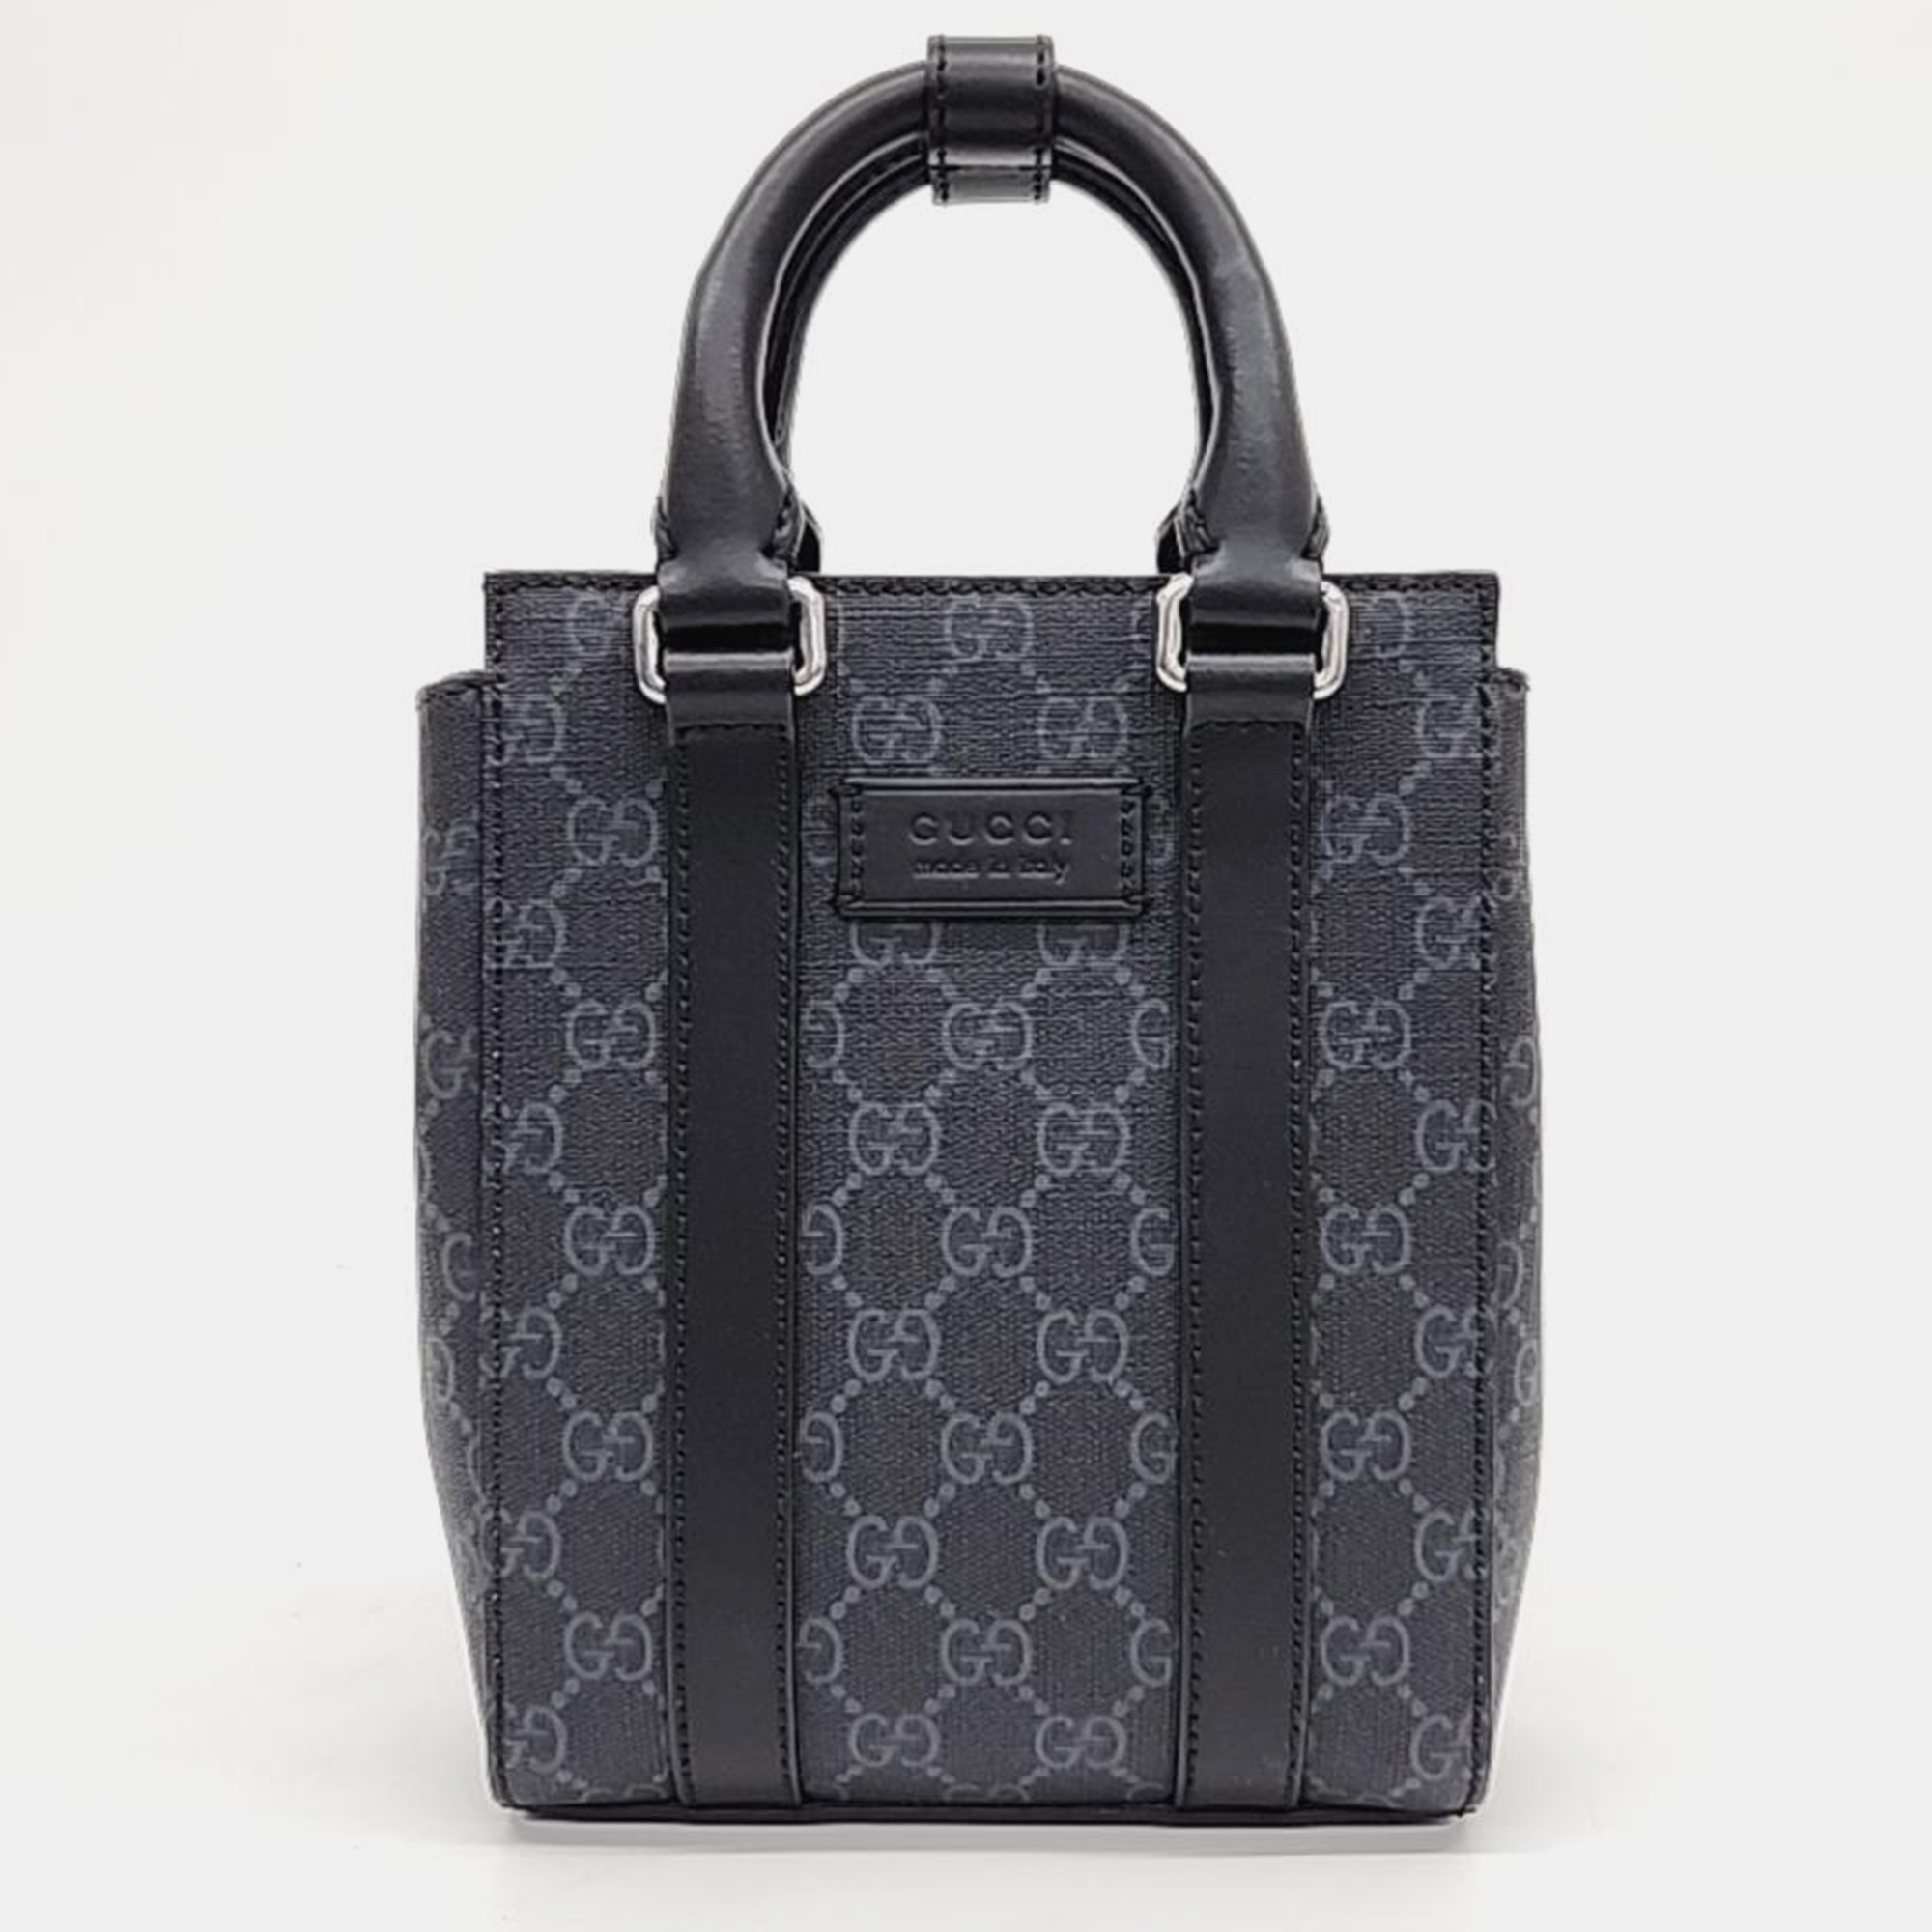 Gucci supreme pvc mini tote and shoulder bag (696010)